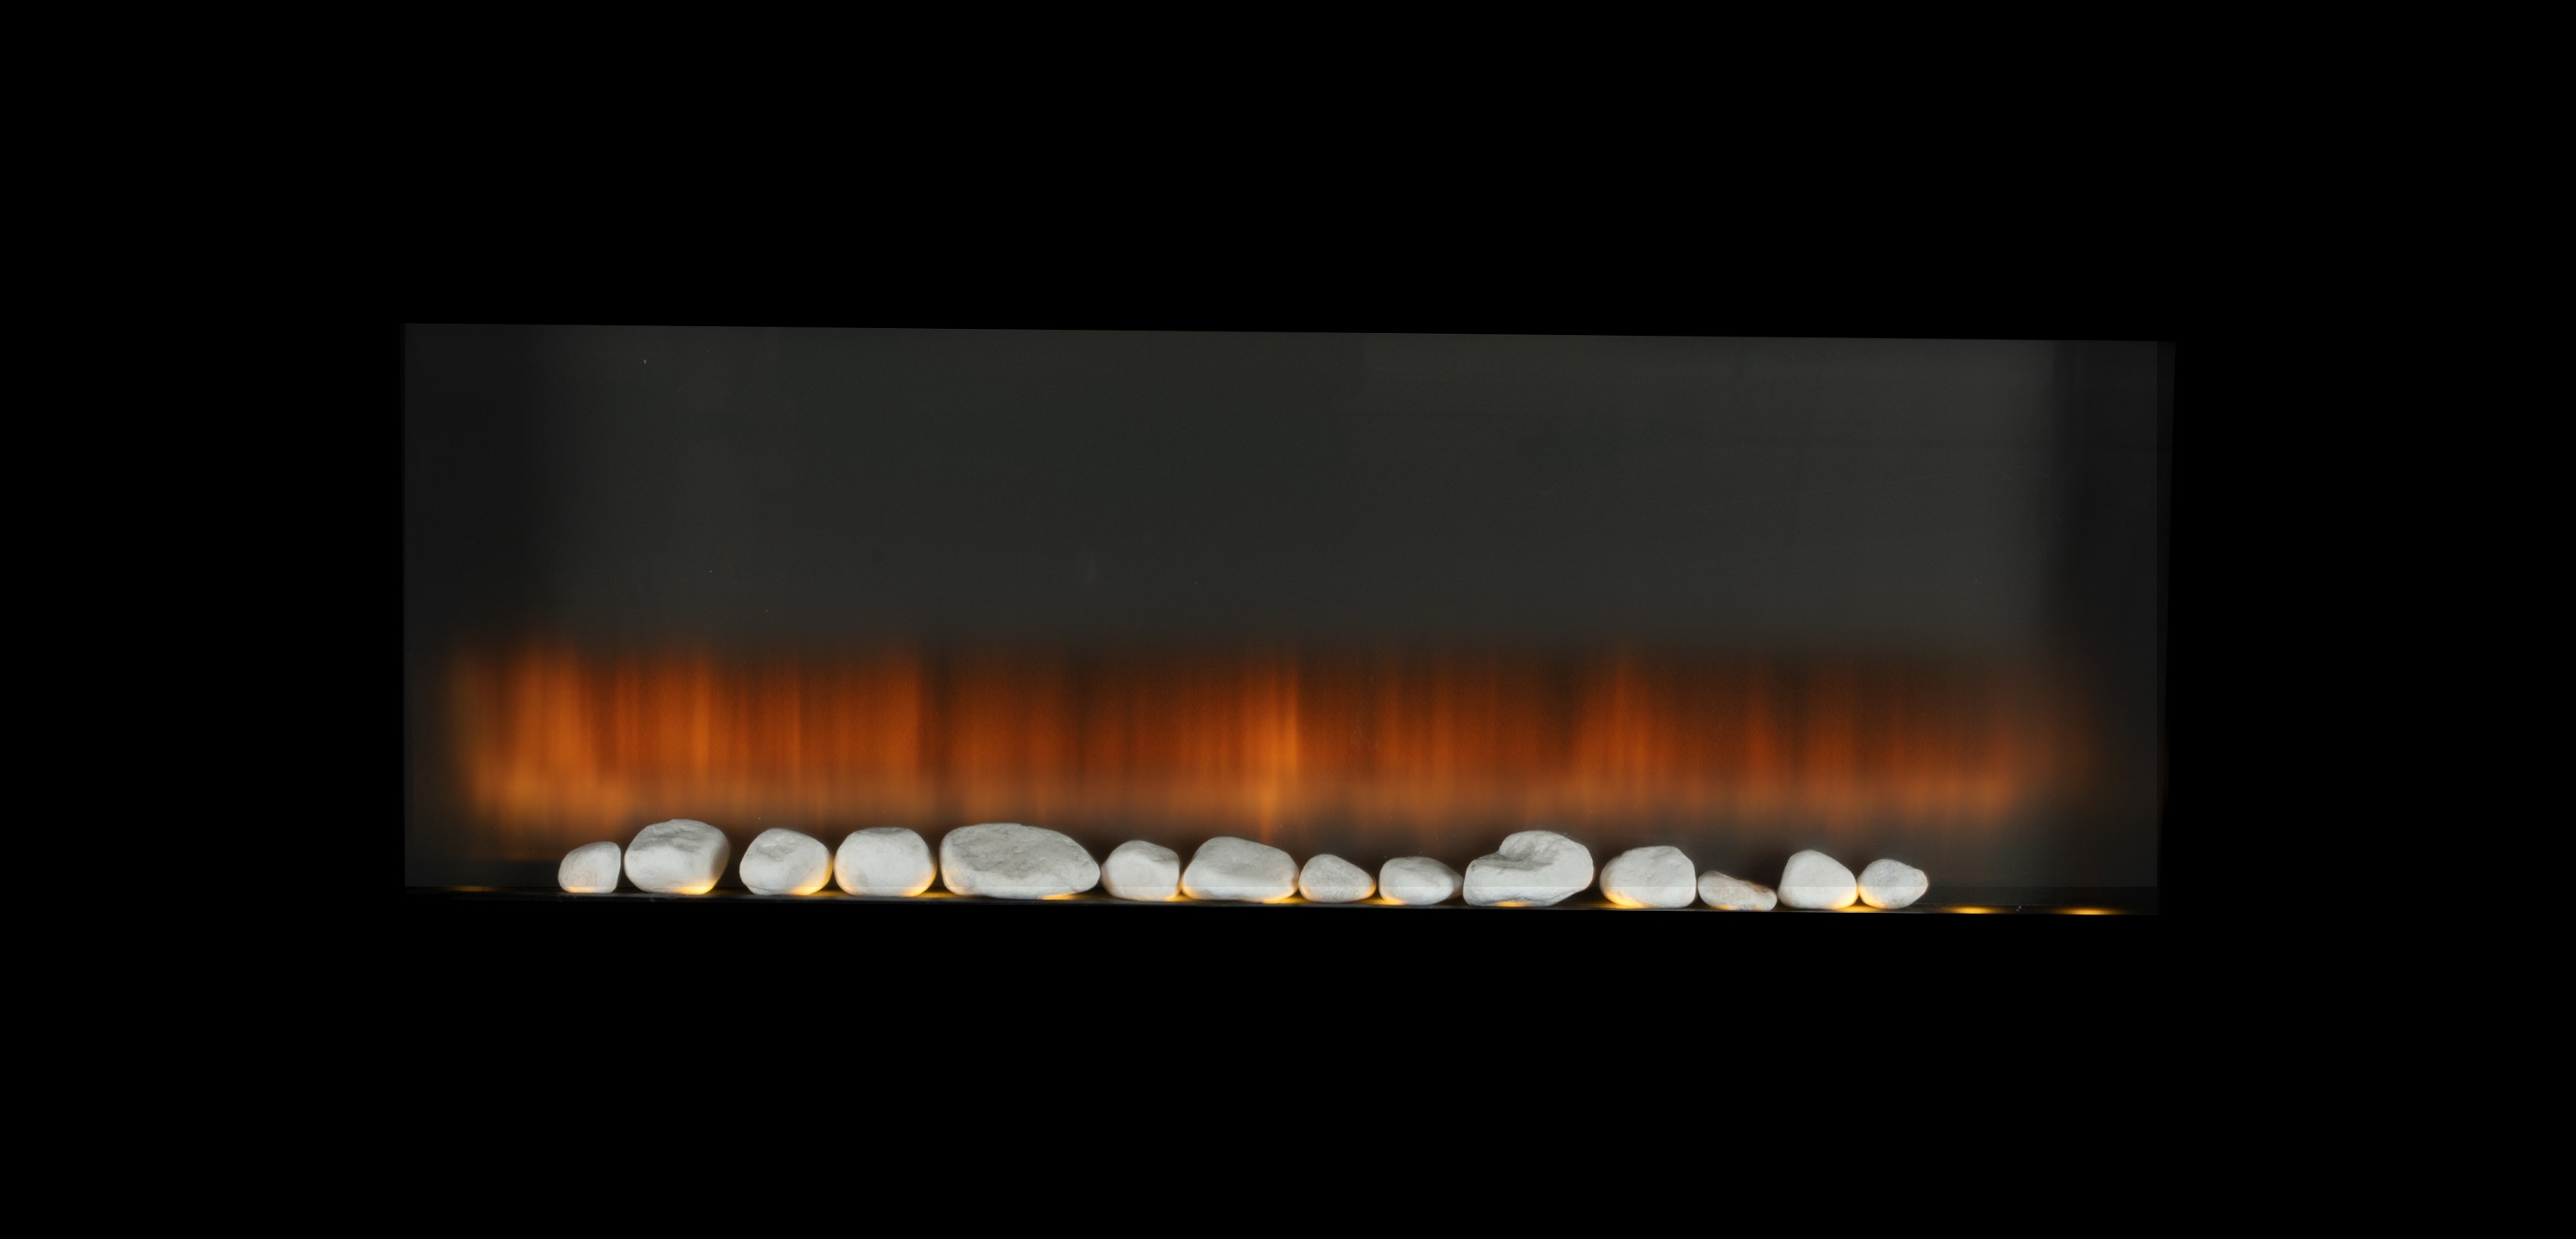 Cheminée électrique LED Alpina Torino avec bois de chauffage artificiel  2000W noir